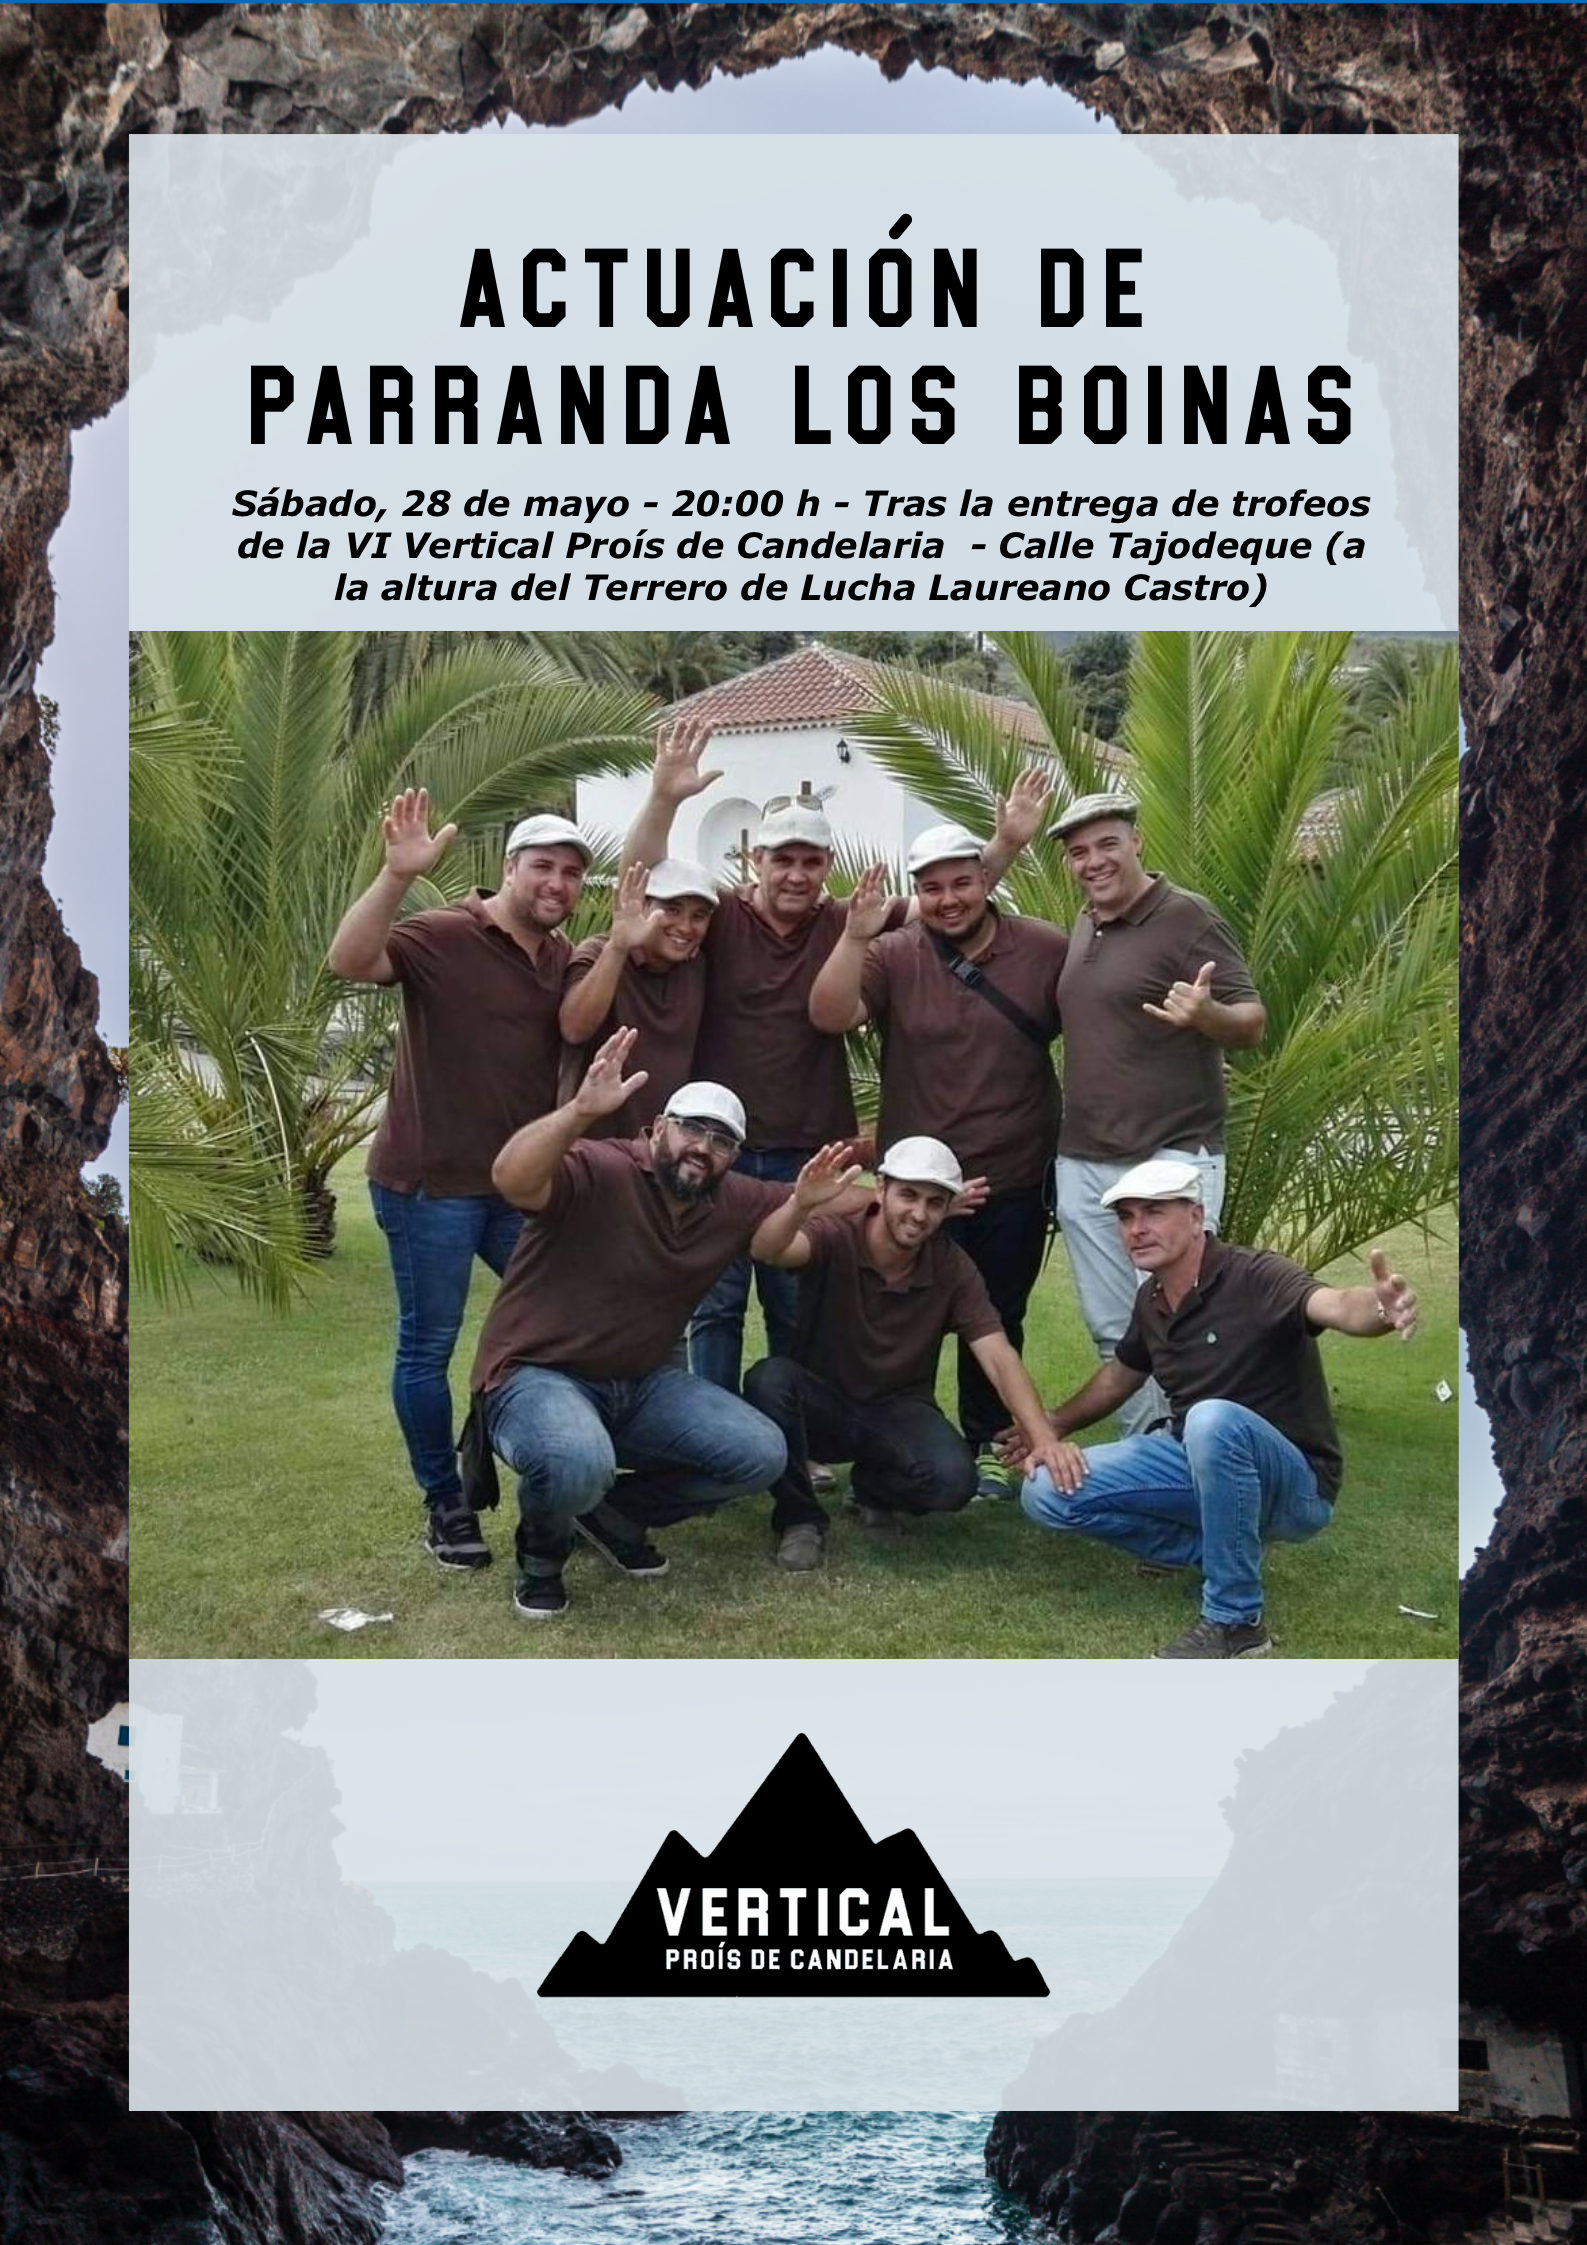 Vertical Proís de Candelaria: Parranda Los Boinas